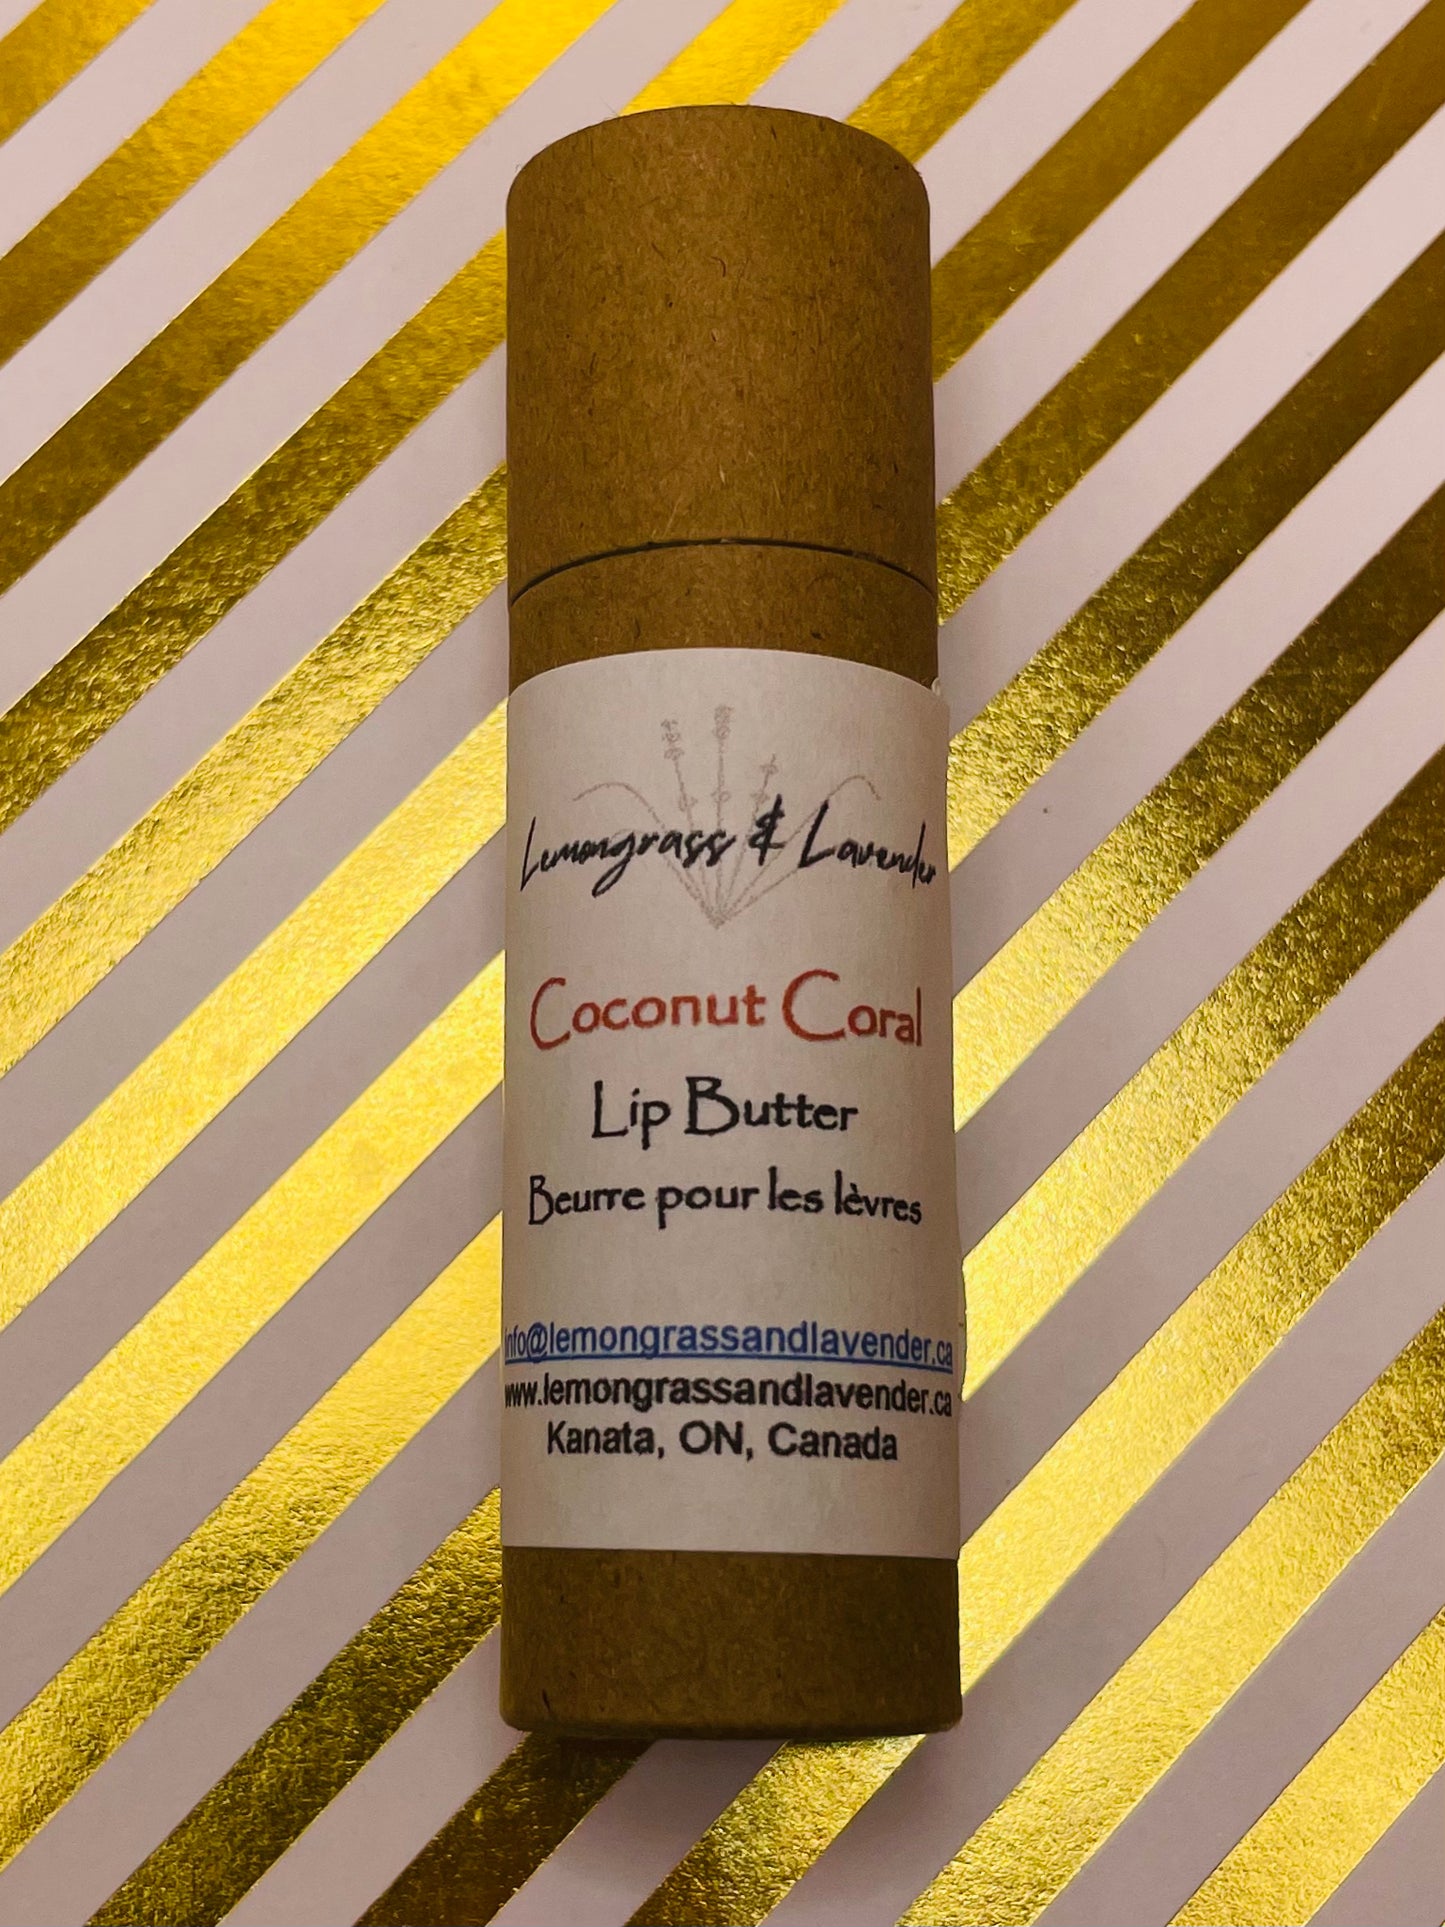 Coconut Coral Lip Butter/beurre pour les levres